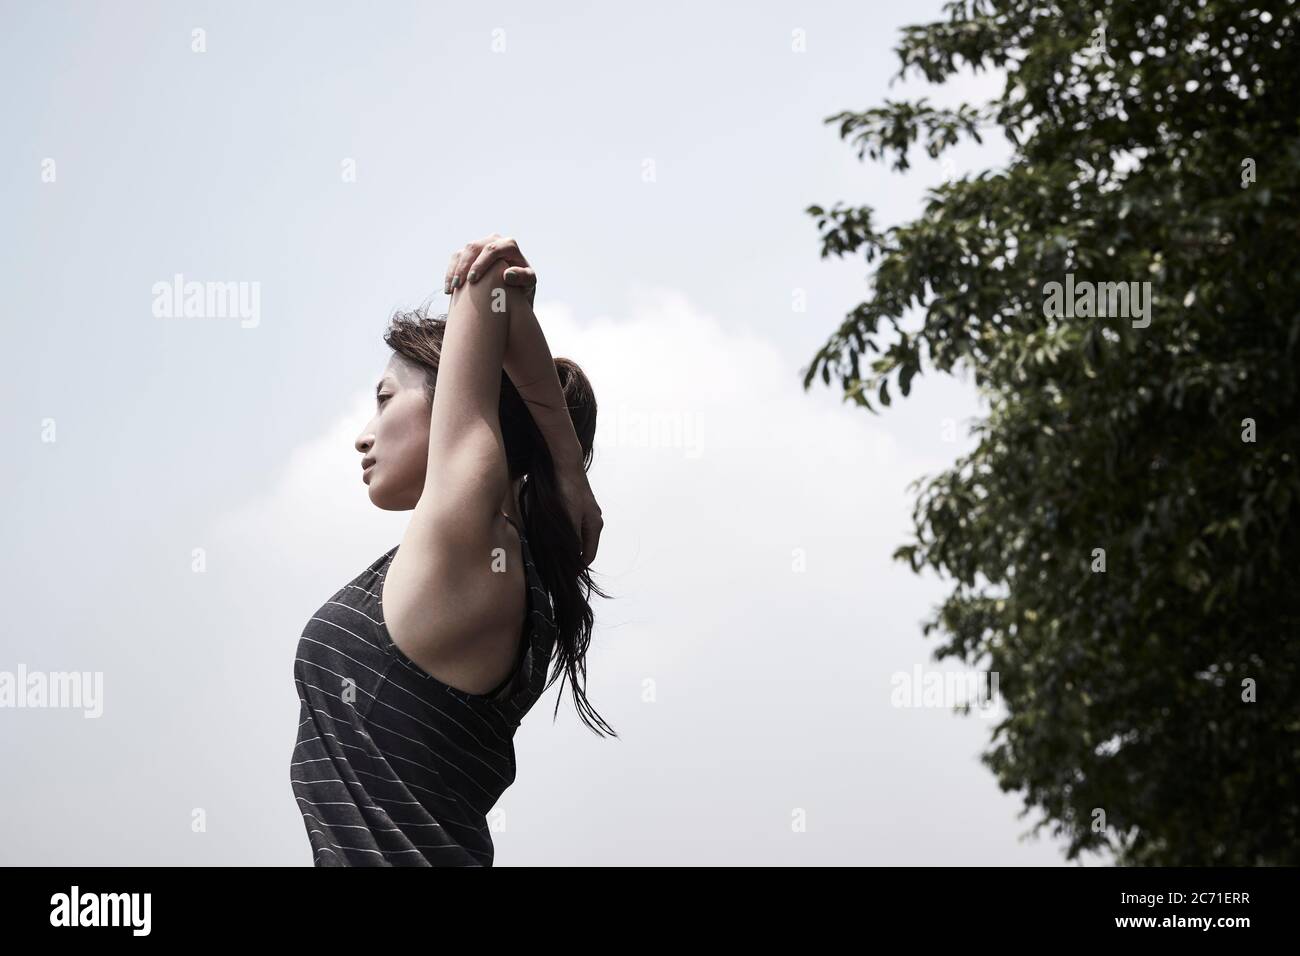 jeune femme adulte asiatique qui s'étend les bras à l'extérieur, vue latérale en angle bas Banque D'Images